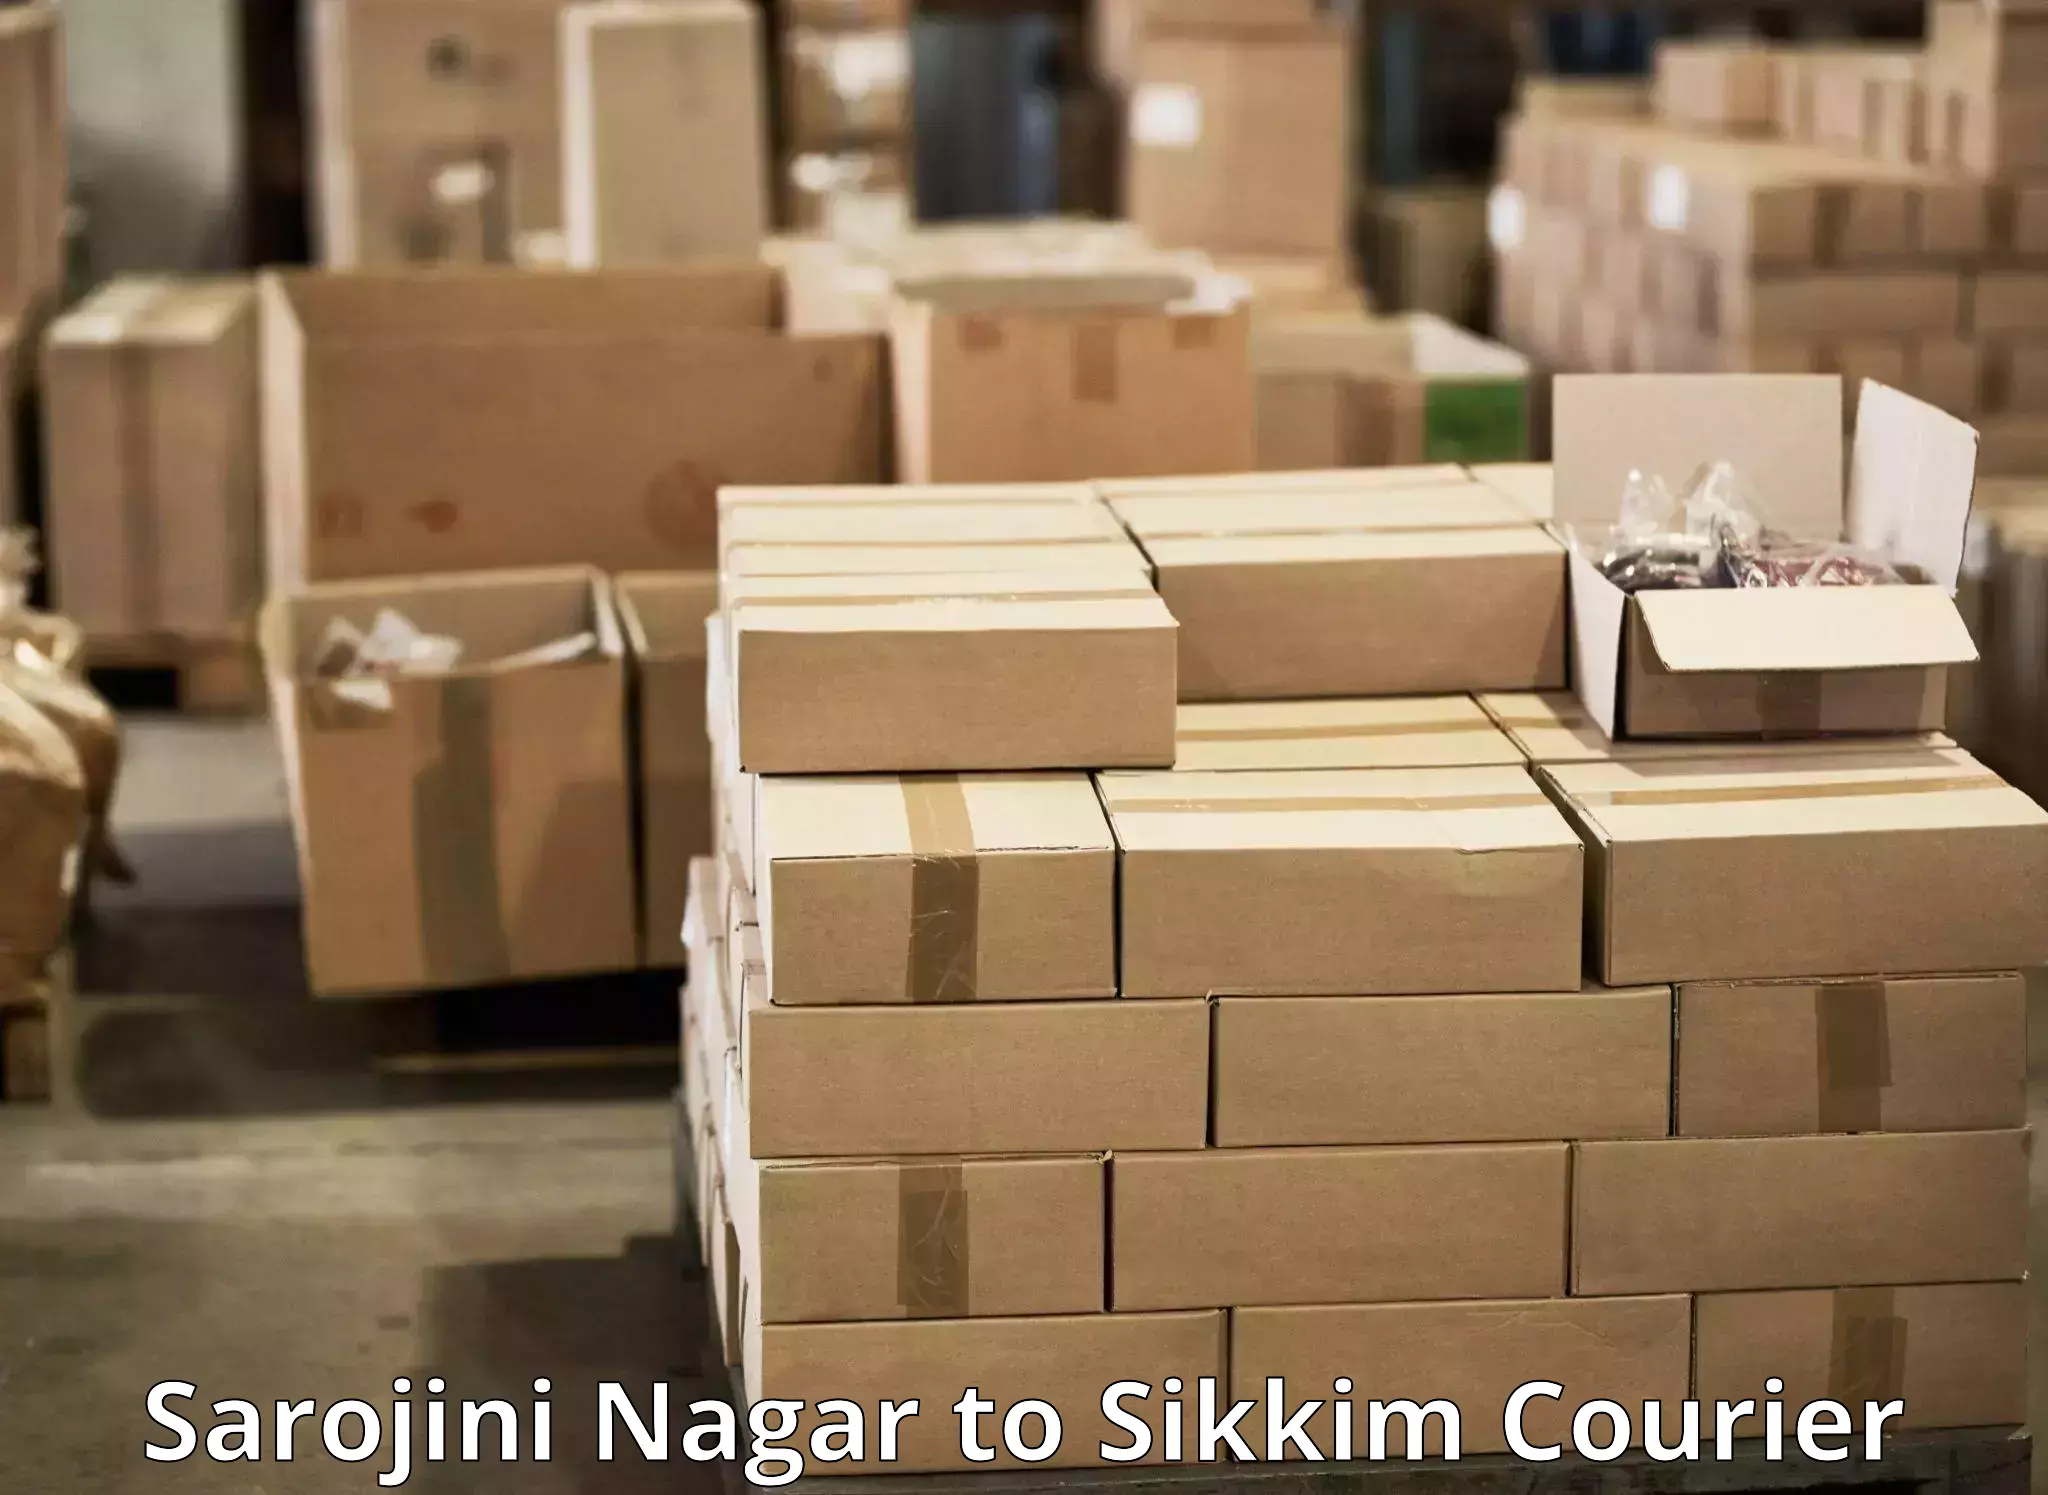 Courier service partnerships Sarojini Nagar to Sikkim